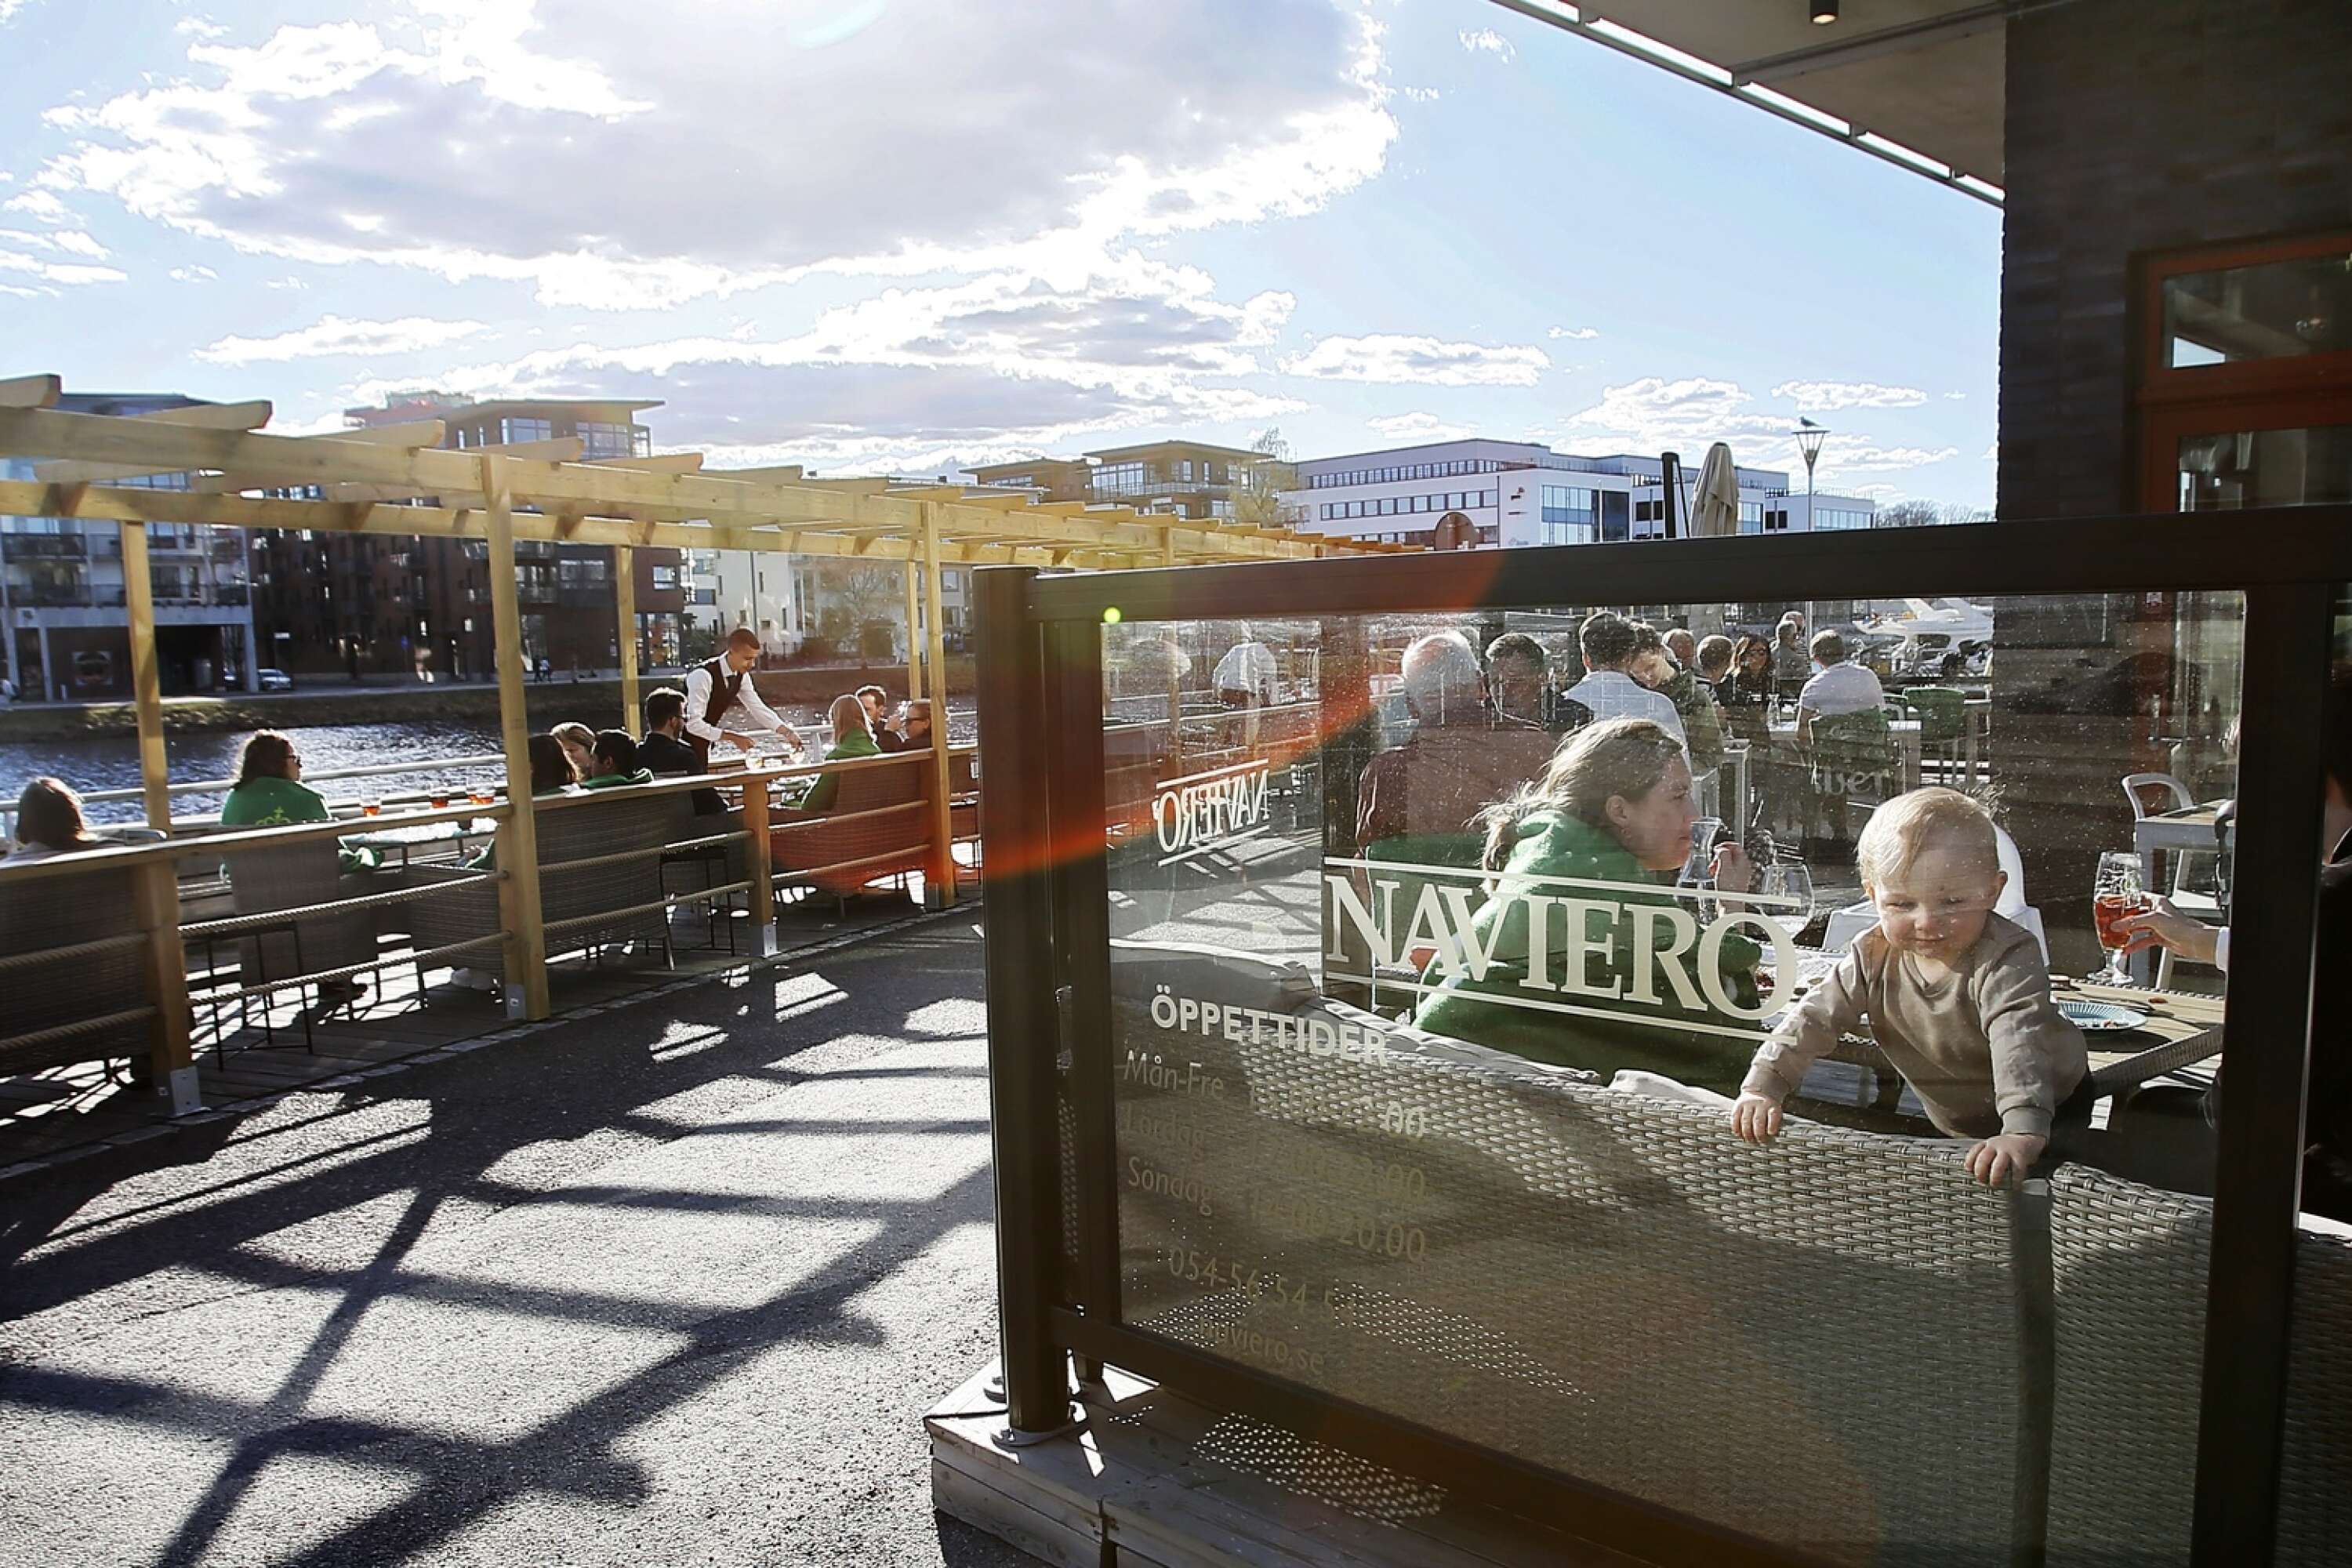 Naviero har både uteservering precis intill restaurangen men även på den närliggande bryggan.